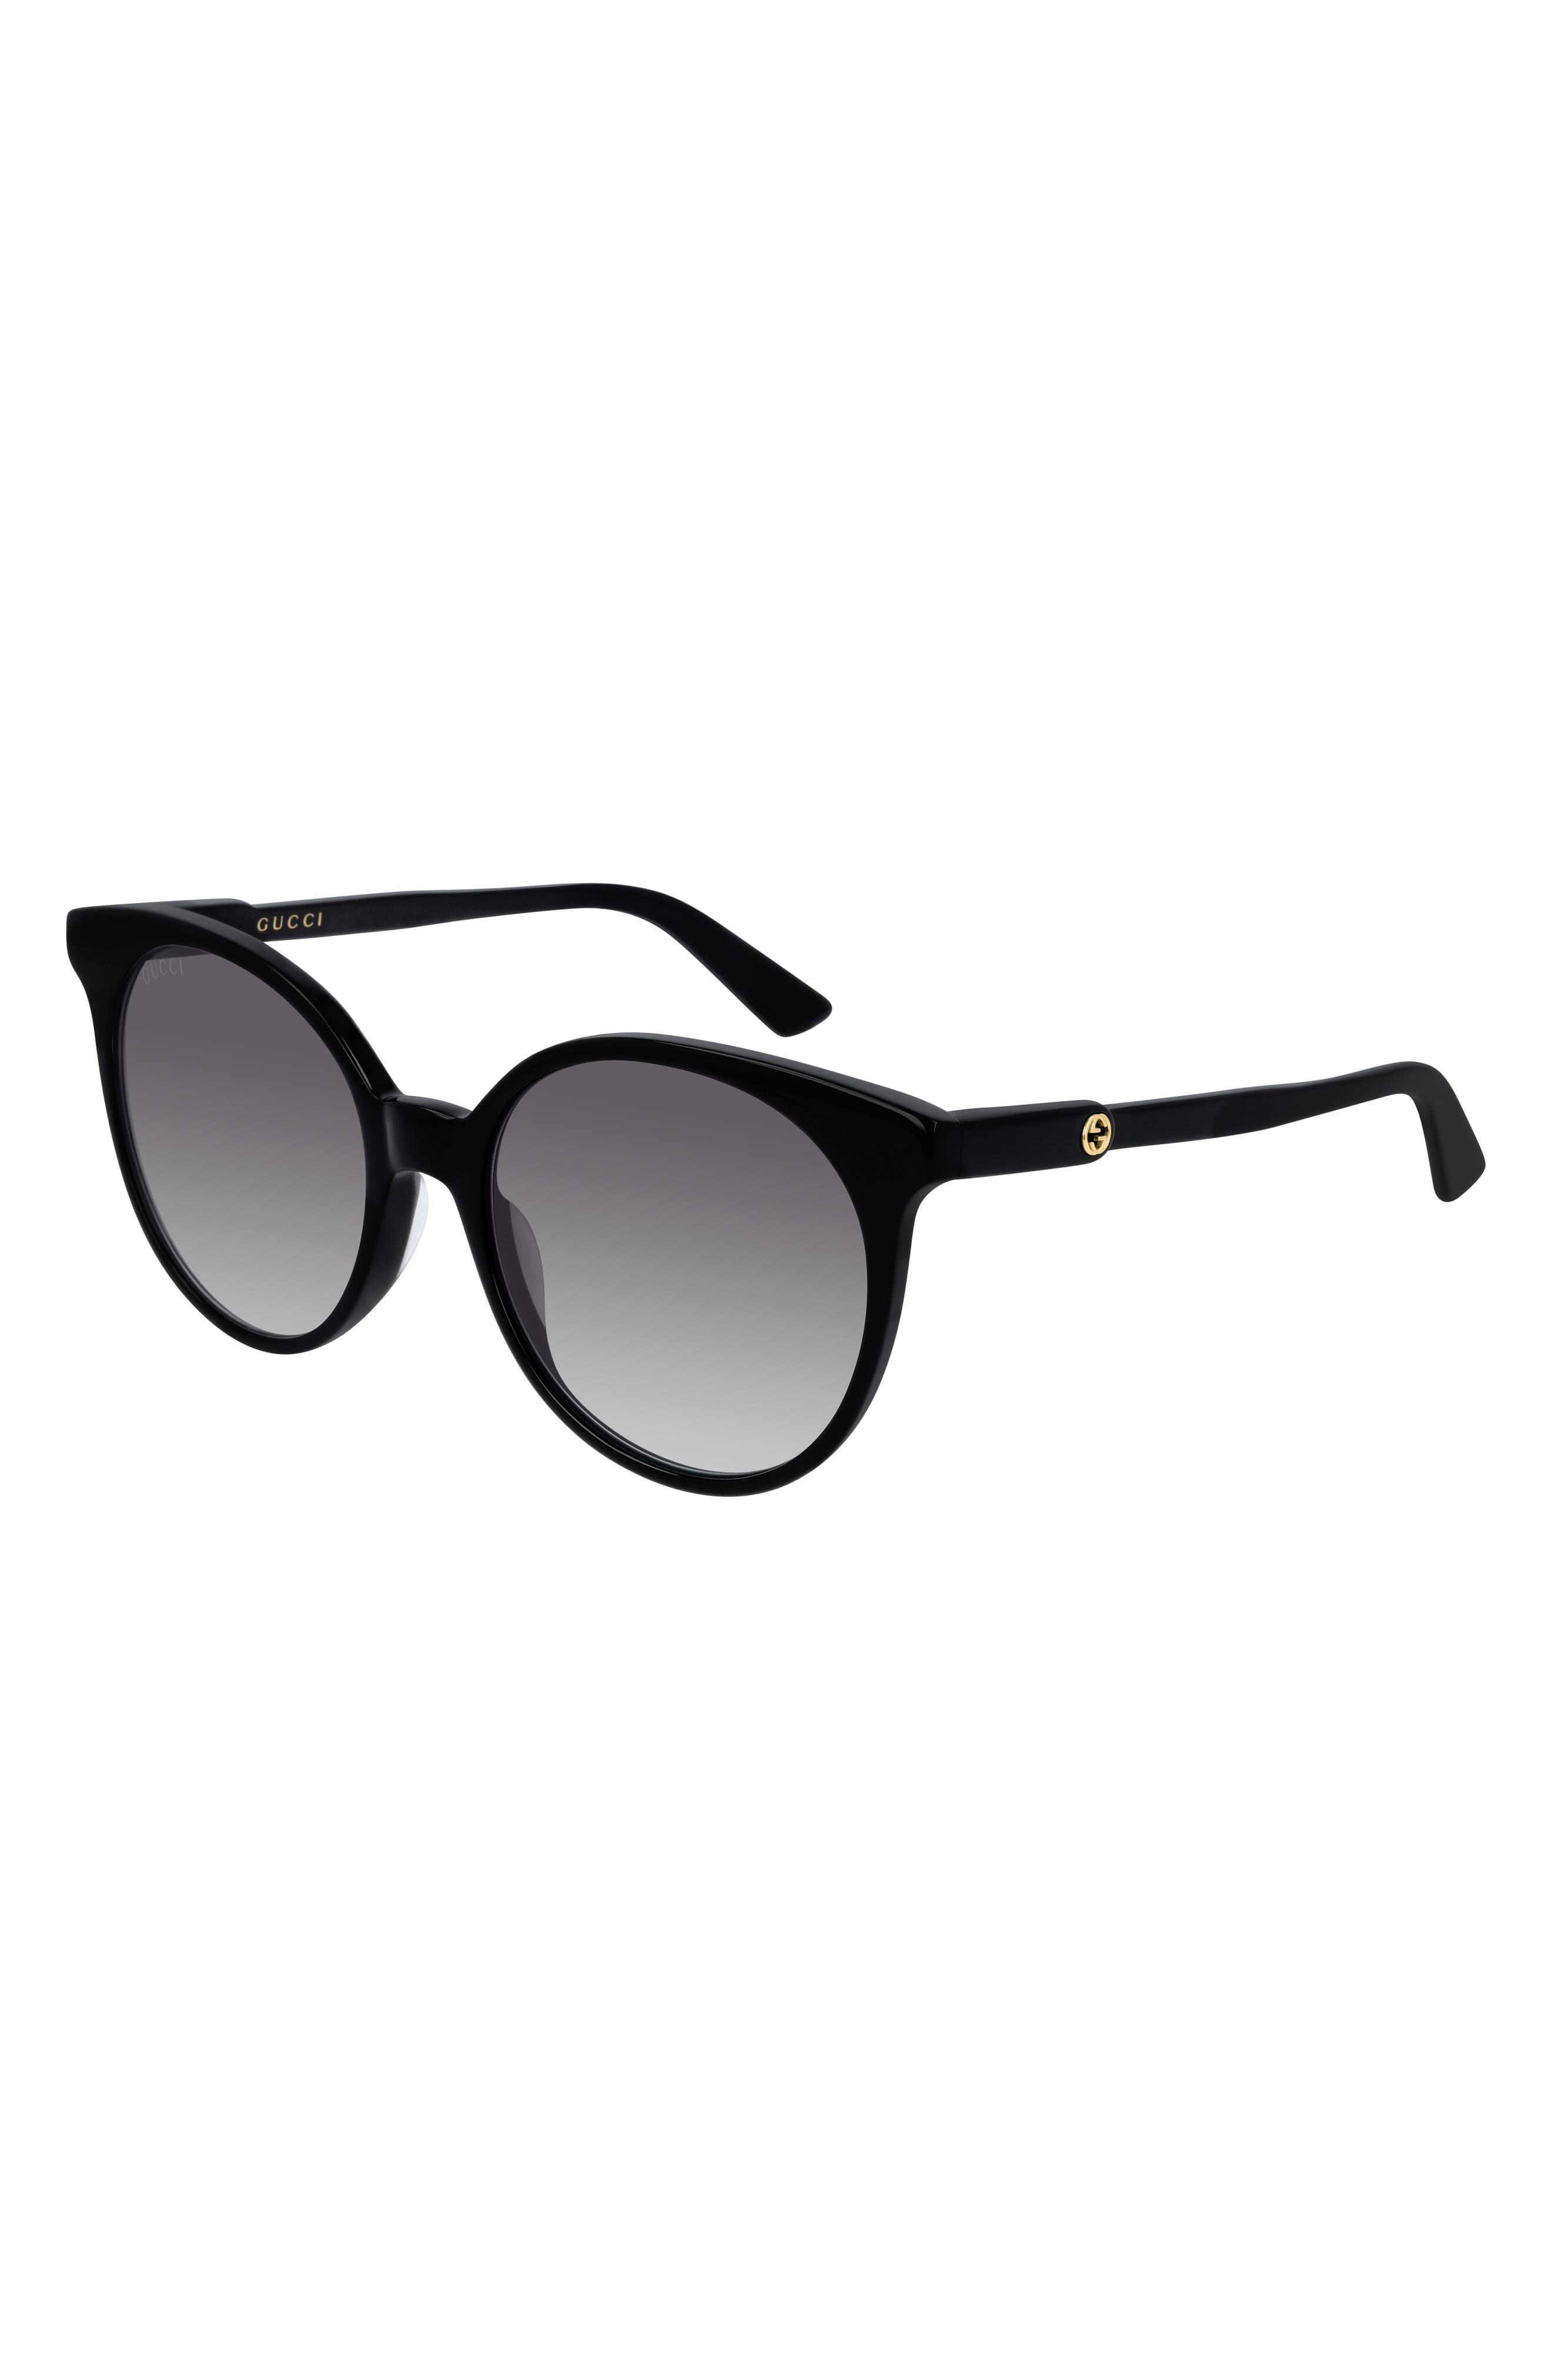 gucci sunglasses round black